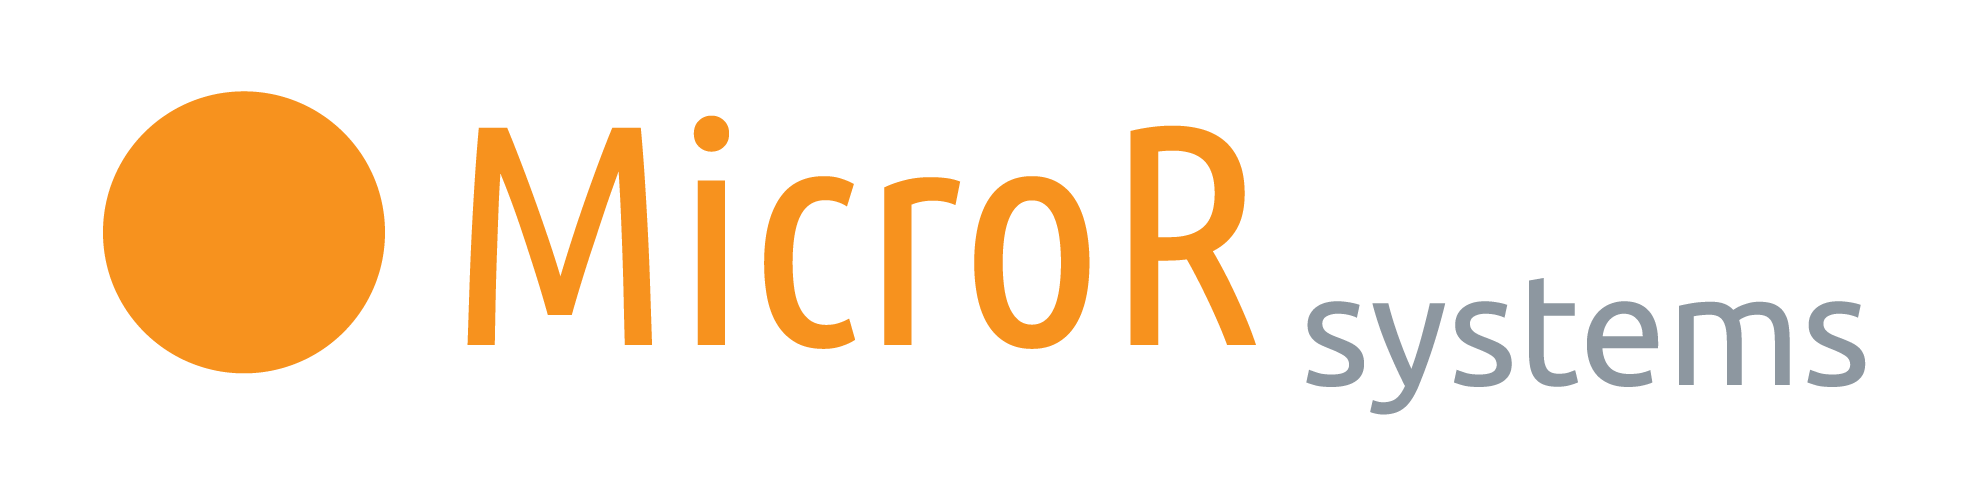 MicroR Systems